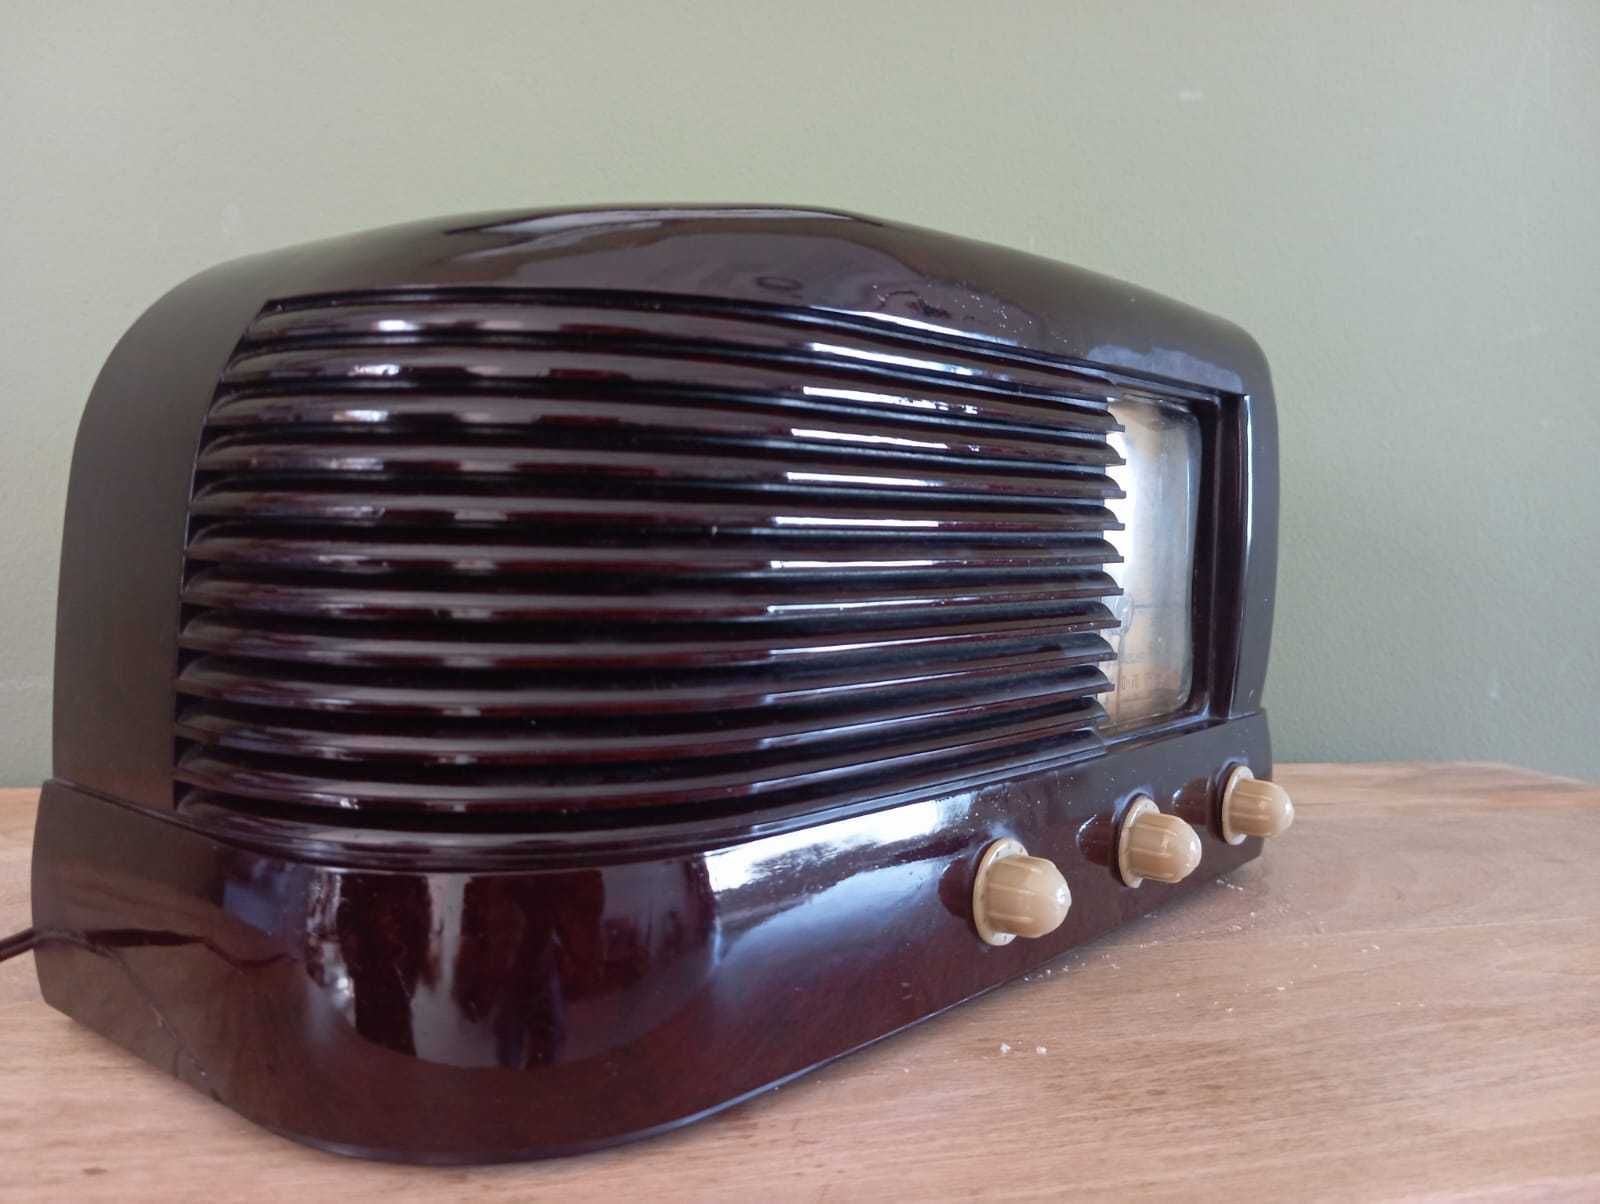 Rádio Zenith Bulllet 422 (Art Déco - modelo raro, museu RTP)